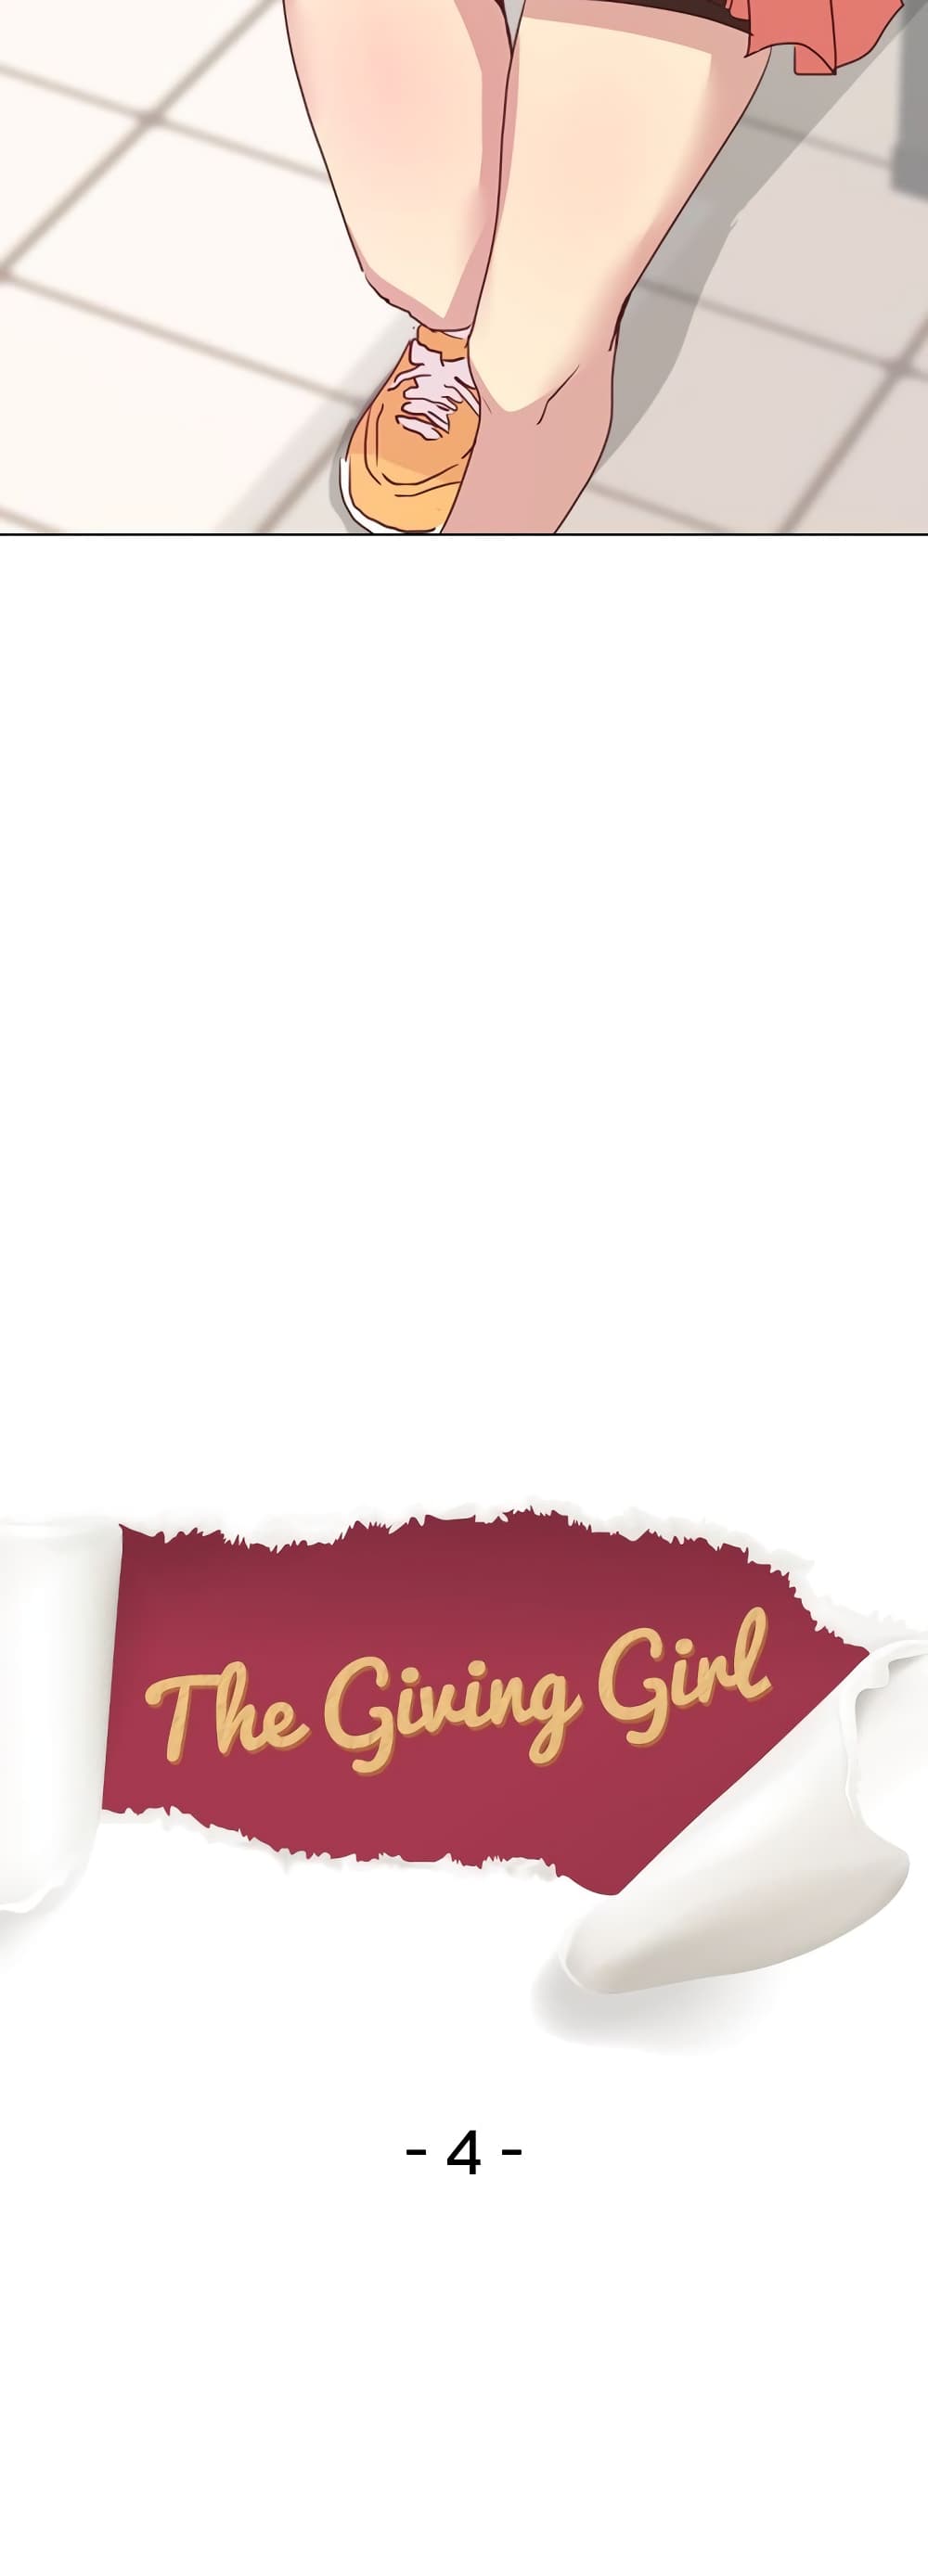 Giving Girl 4-4